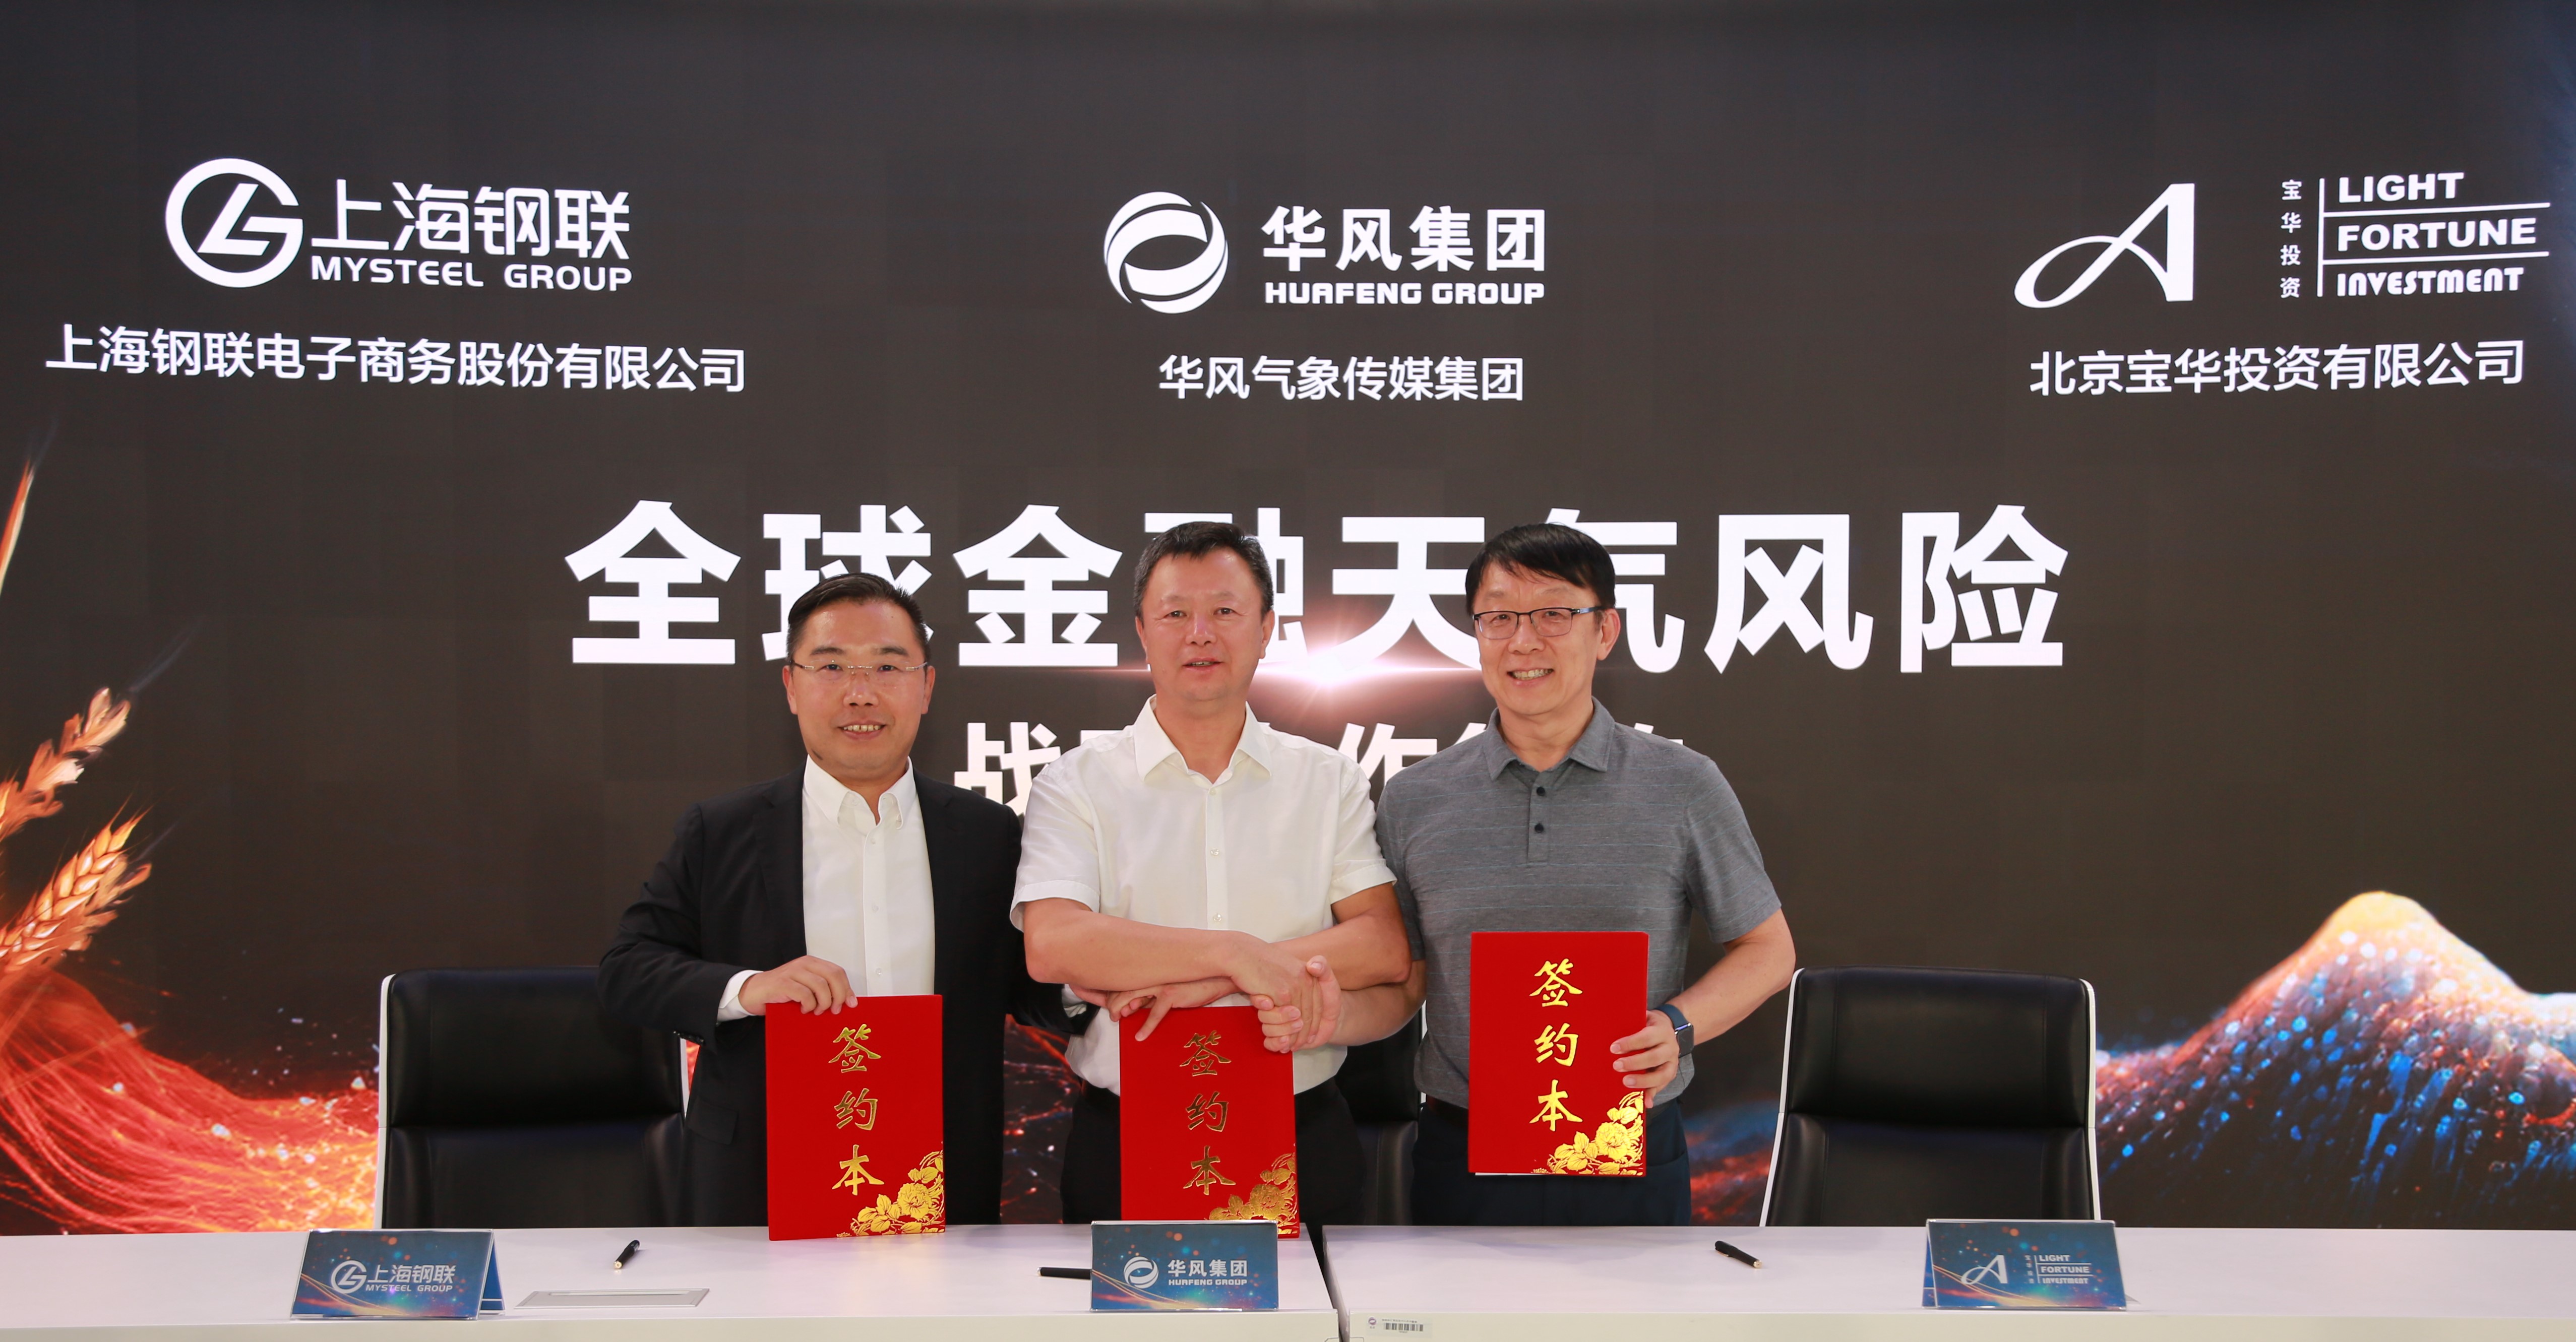 中国气象局华风集团、上海钢联、宝华投资三方签署战略合作协议